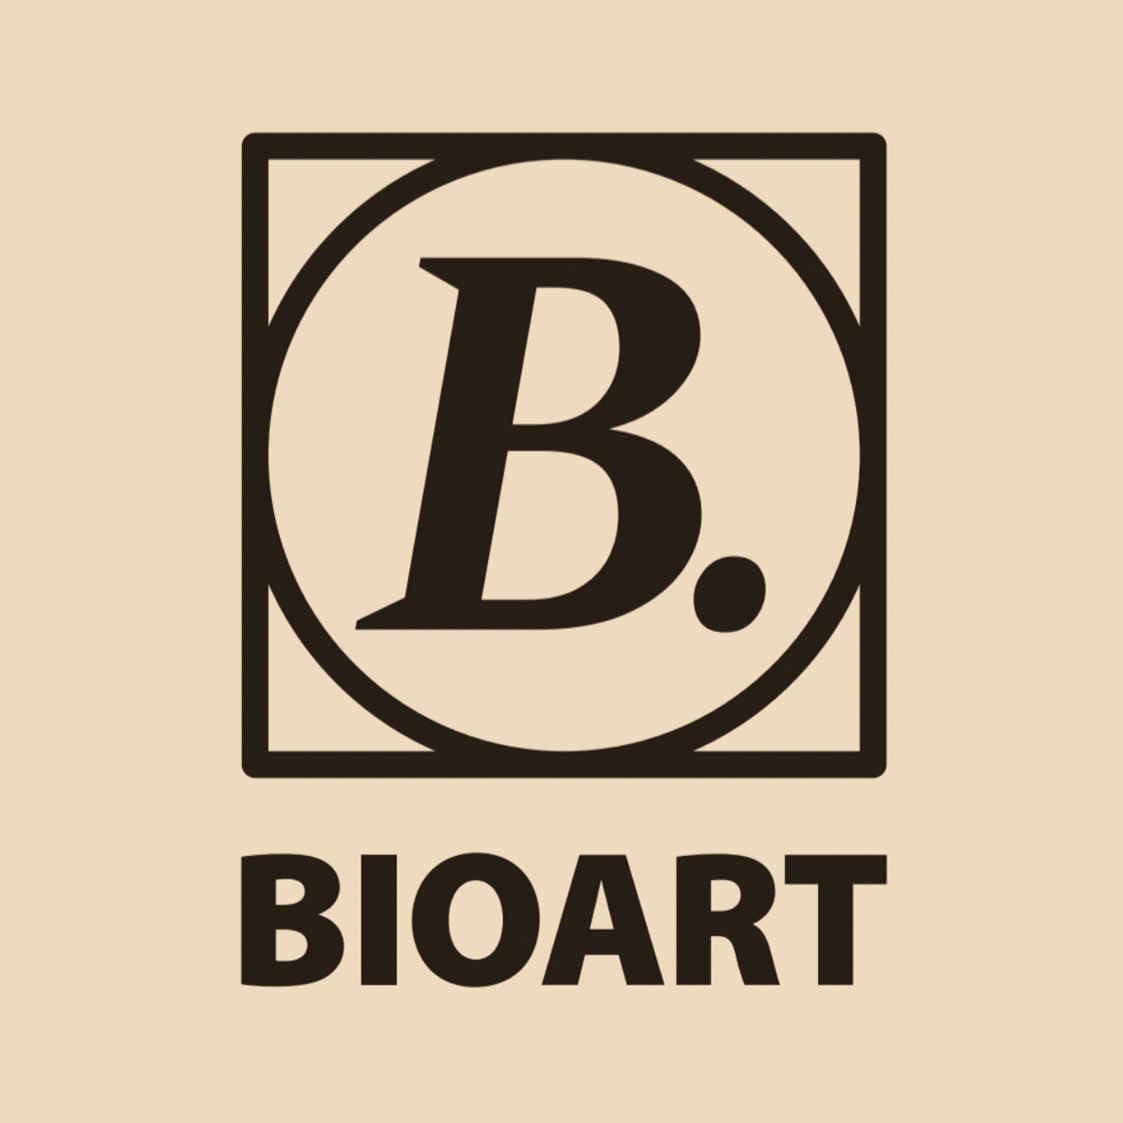 Unternehmen: BioArt AG